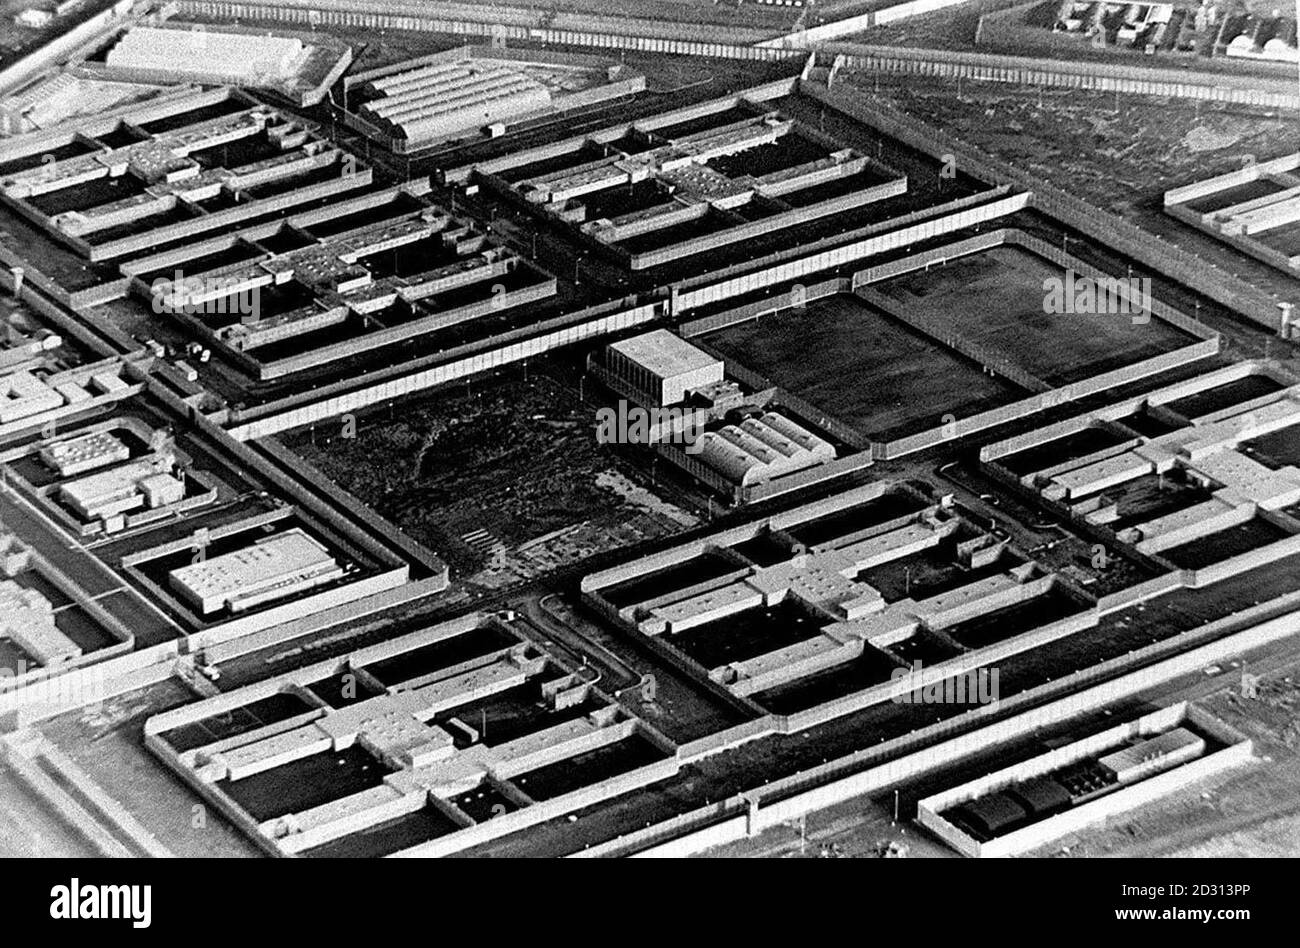 Vue aérienne de la prison de Maze, où se sont échappés 38 prisonniers de l'IRA. 14/3/95: Émeute. 25/8/95. 24/3/97: Offre de tri. 27/12/97: Homme abattu. 15/03/98: David Keys trouvé pendu dans la cellule. 11/11/98: Fermeture à la fin de l'année 2000. 28/7/00: Prisonniers libérés. * le bombardier des Docklands de Londres et le tireur de la frontière qui ont ramassé la police et les troupes en service étaient parmi plus de 80 prisonniers terroristes mis à couler de la prison de Maze. La dernière vague de versions préliminaires dans le cadre de l'Accord du Vendredi Saint a été mise à vider la prison infâme. Banque D'Images